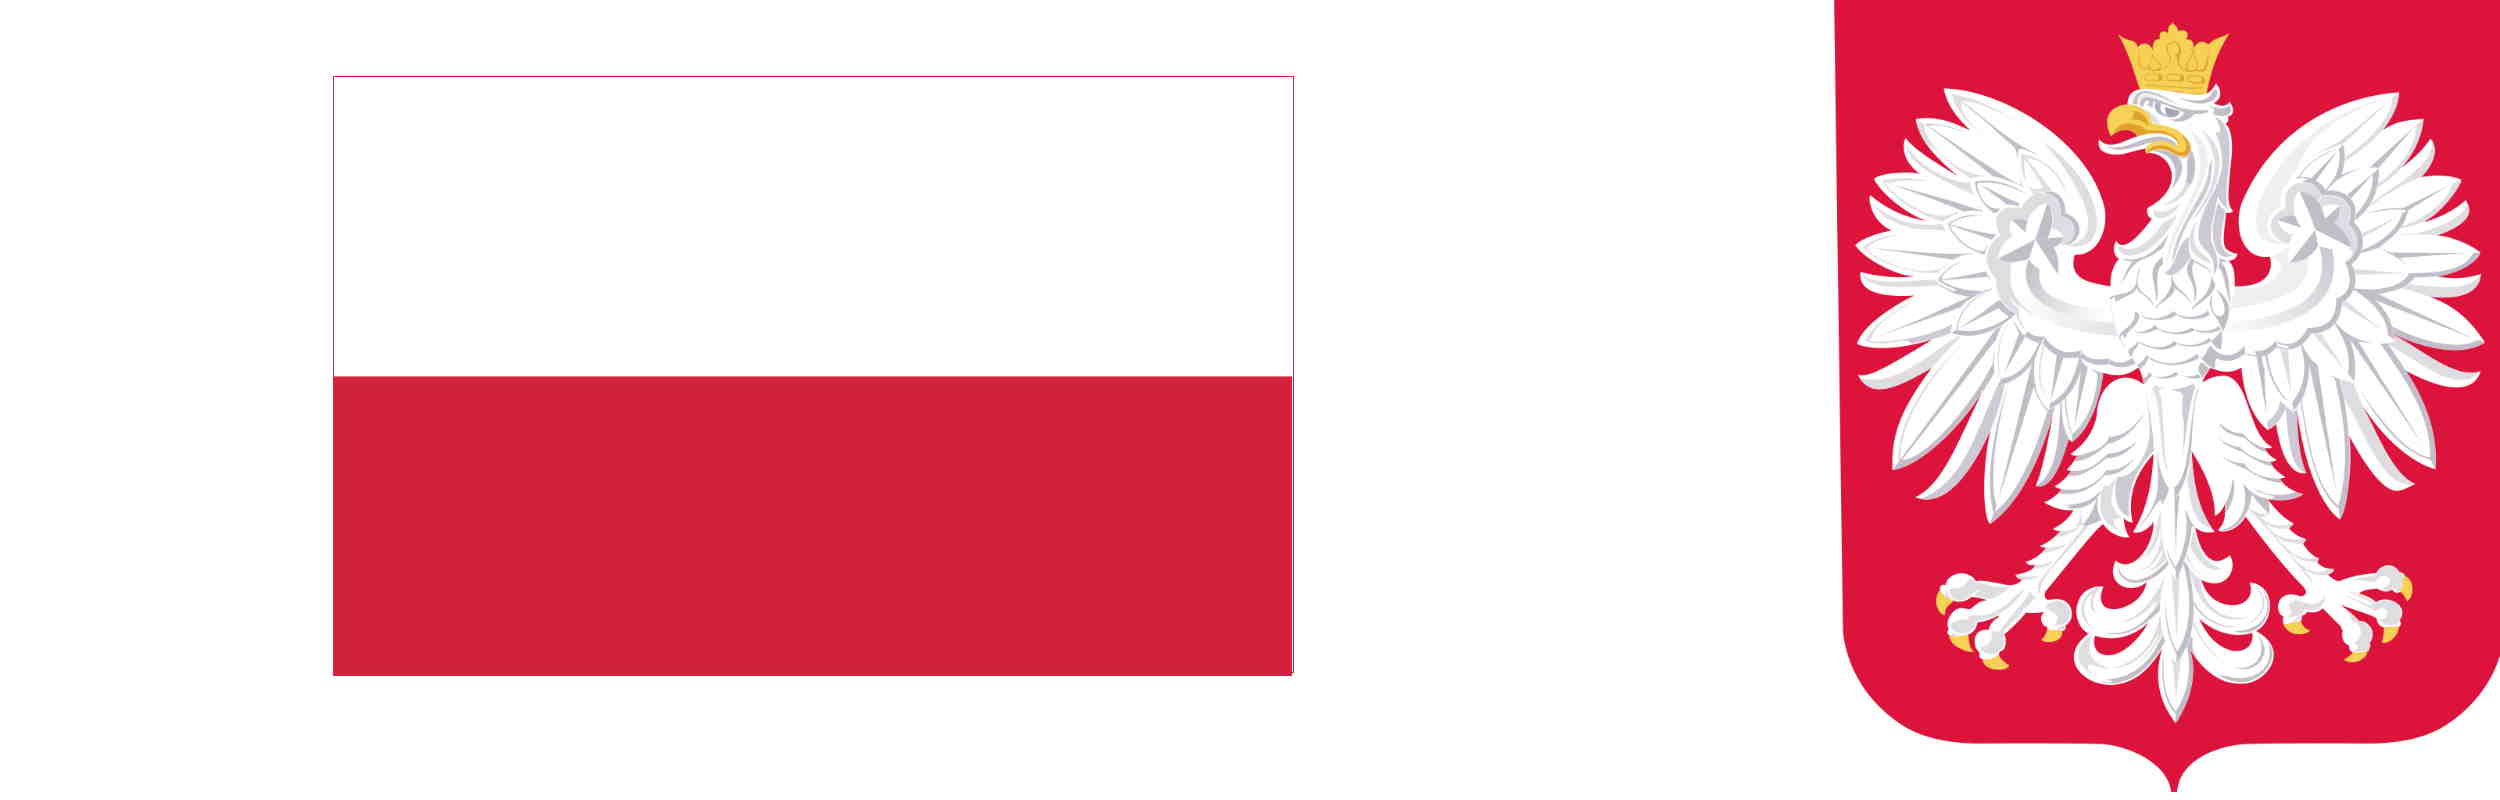 Flaga i godło Rzeczypospolitej Polskiej